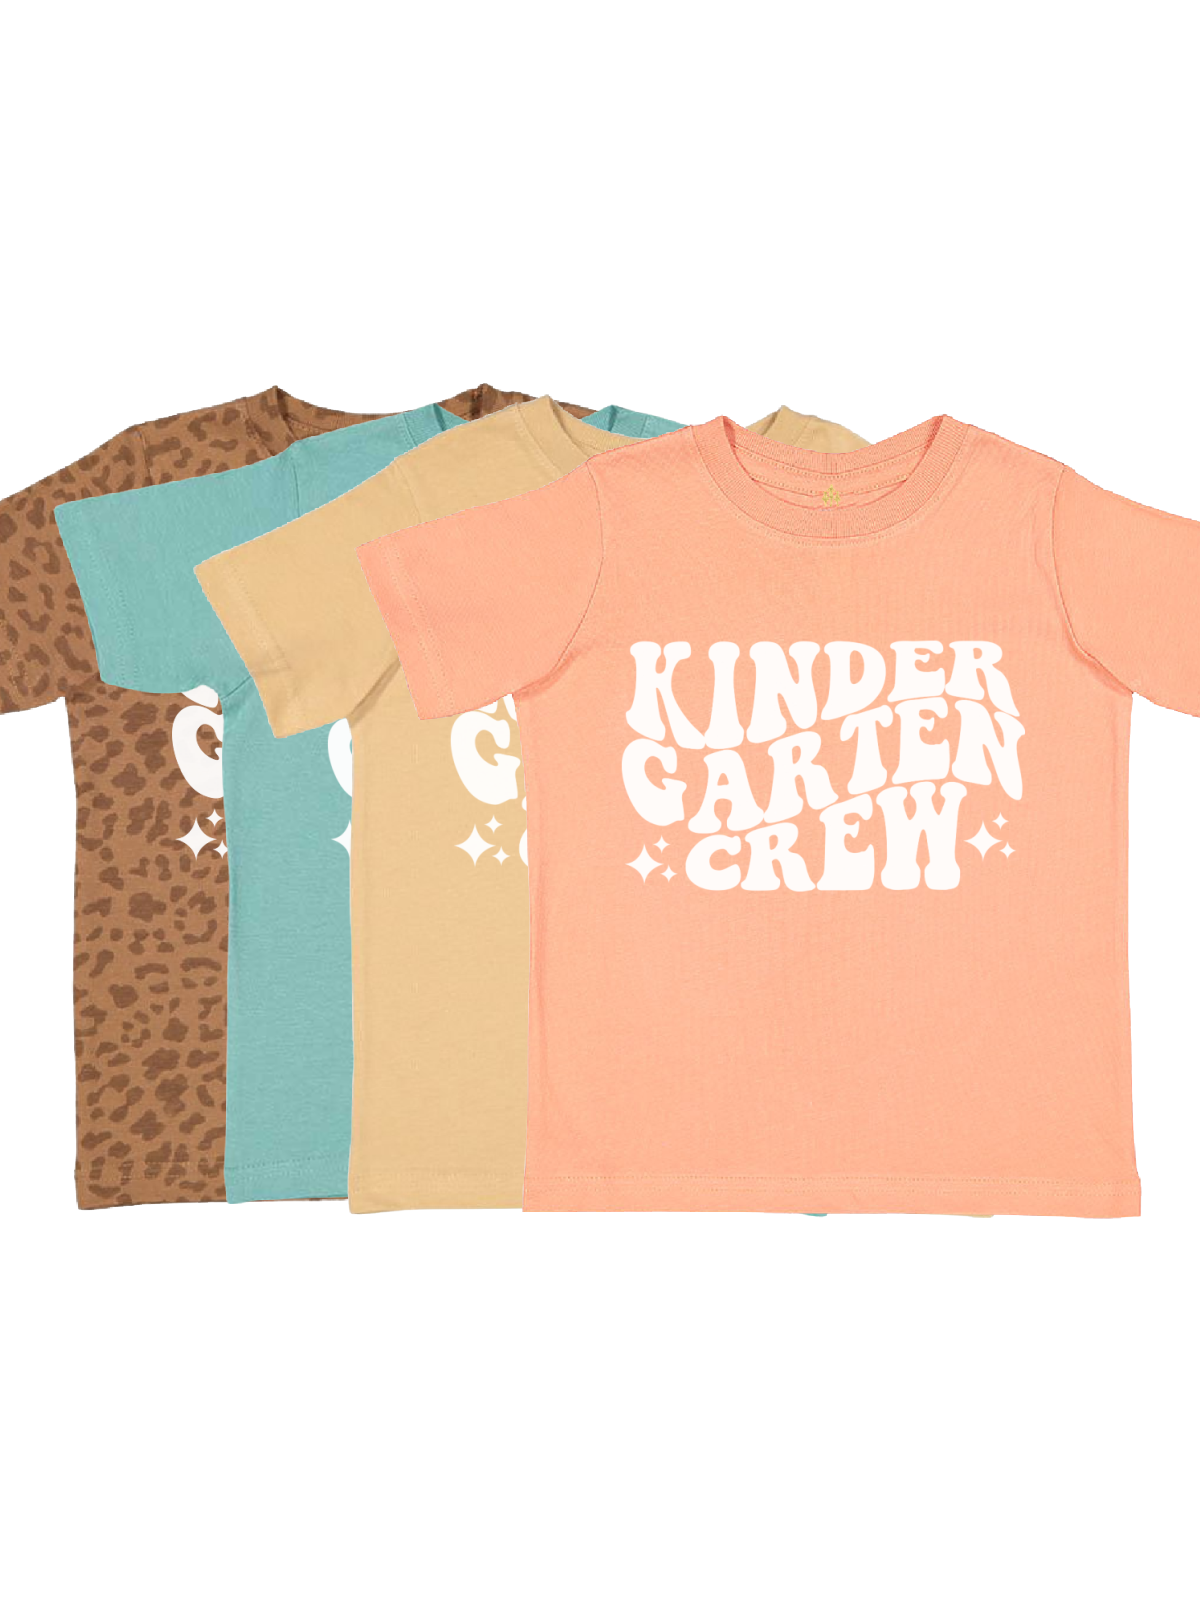 Kindergarten Crew Kids Back to School Shirts